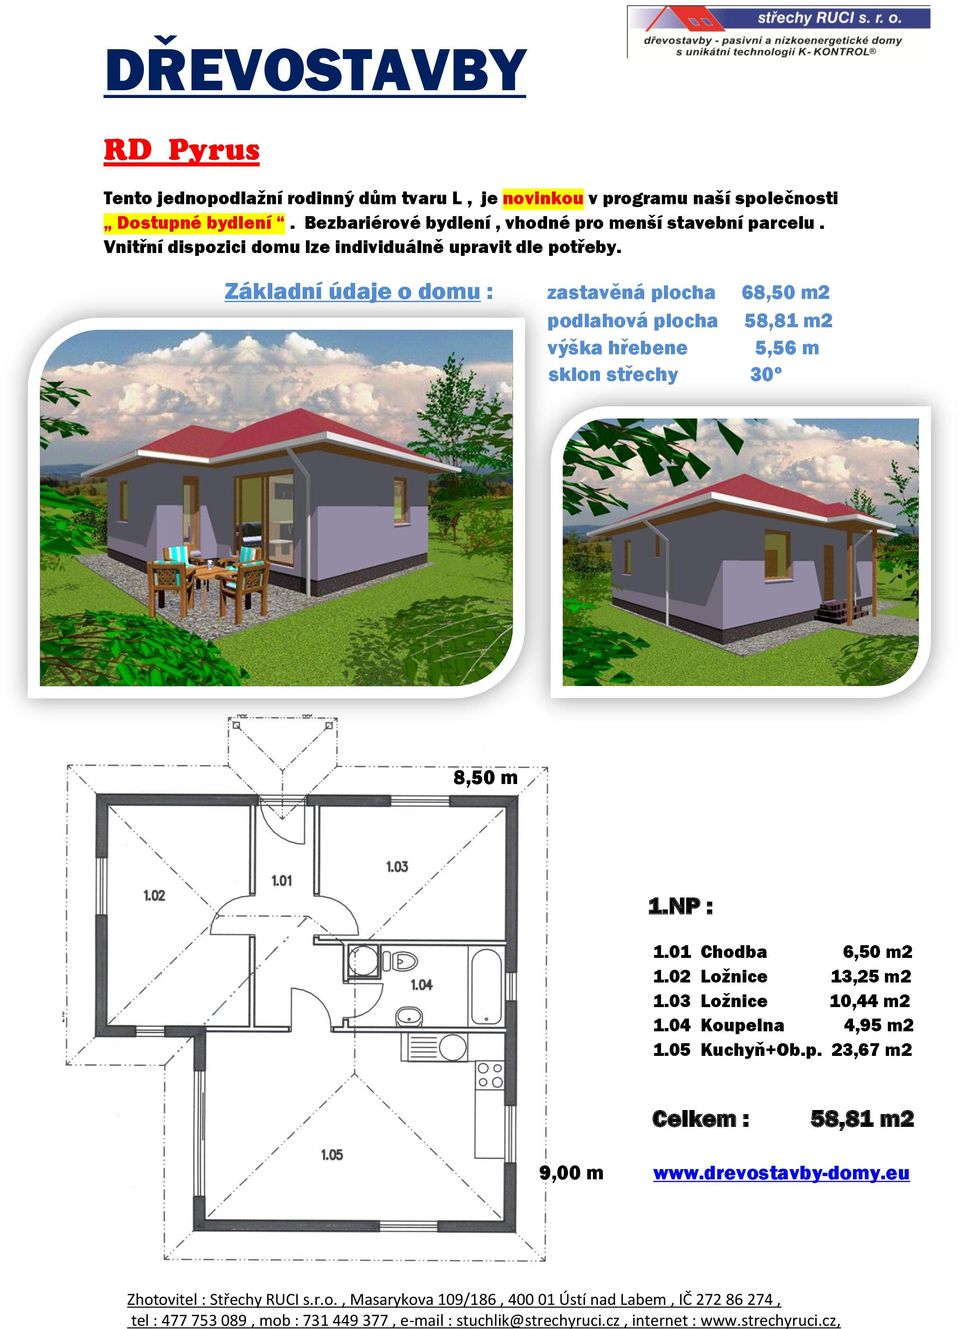 Základní údaje o domu : zastavěná plocha 68,50 m2 podlahová plocha 58,81 m2 výška hřebene 5,56 m sklon střechy 30º 8,50 m 1.NP : 1.01 Chodba 6,50 m2 1.